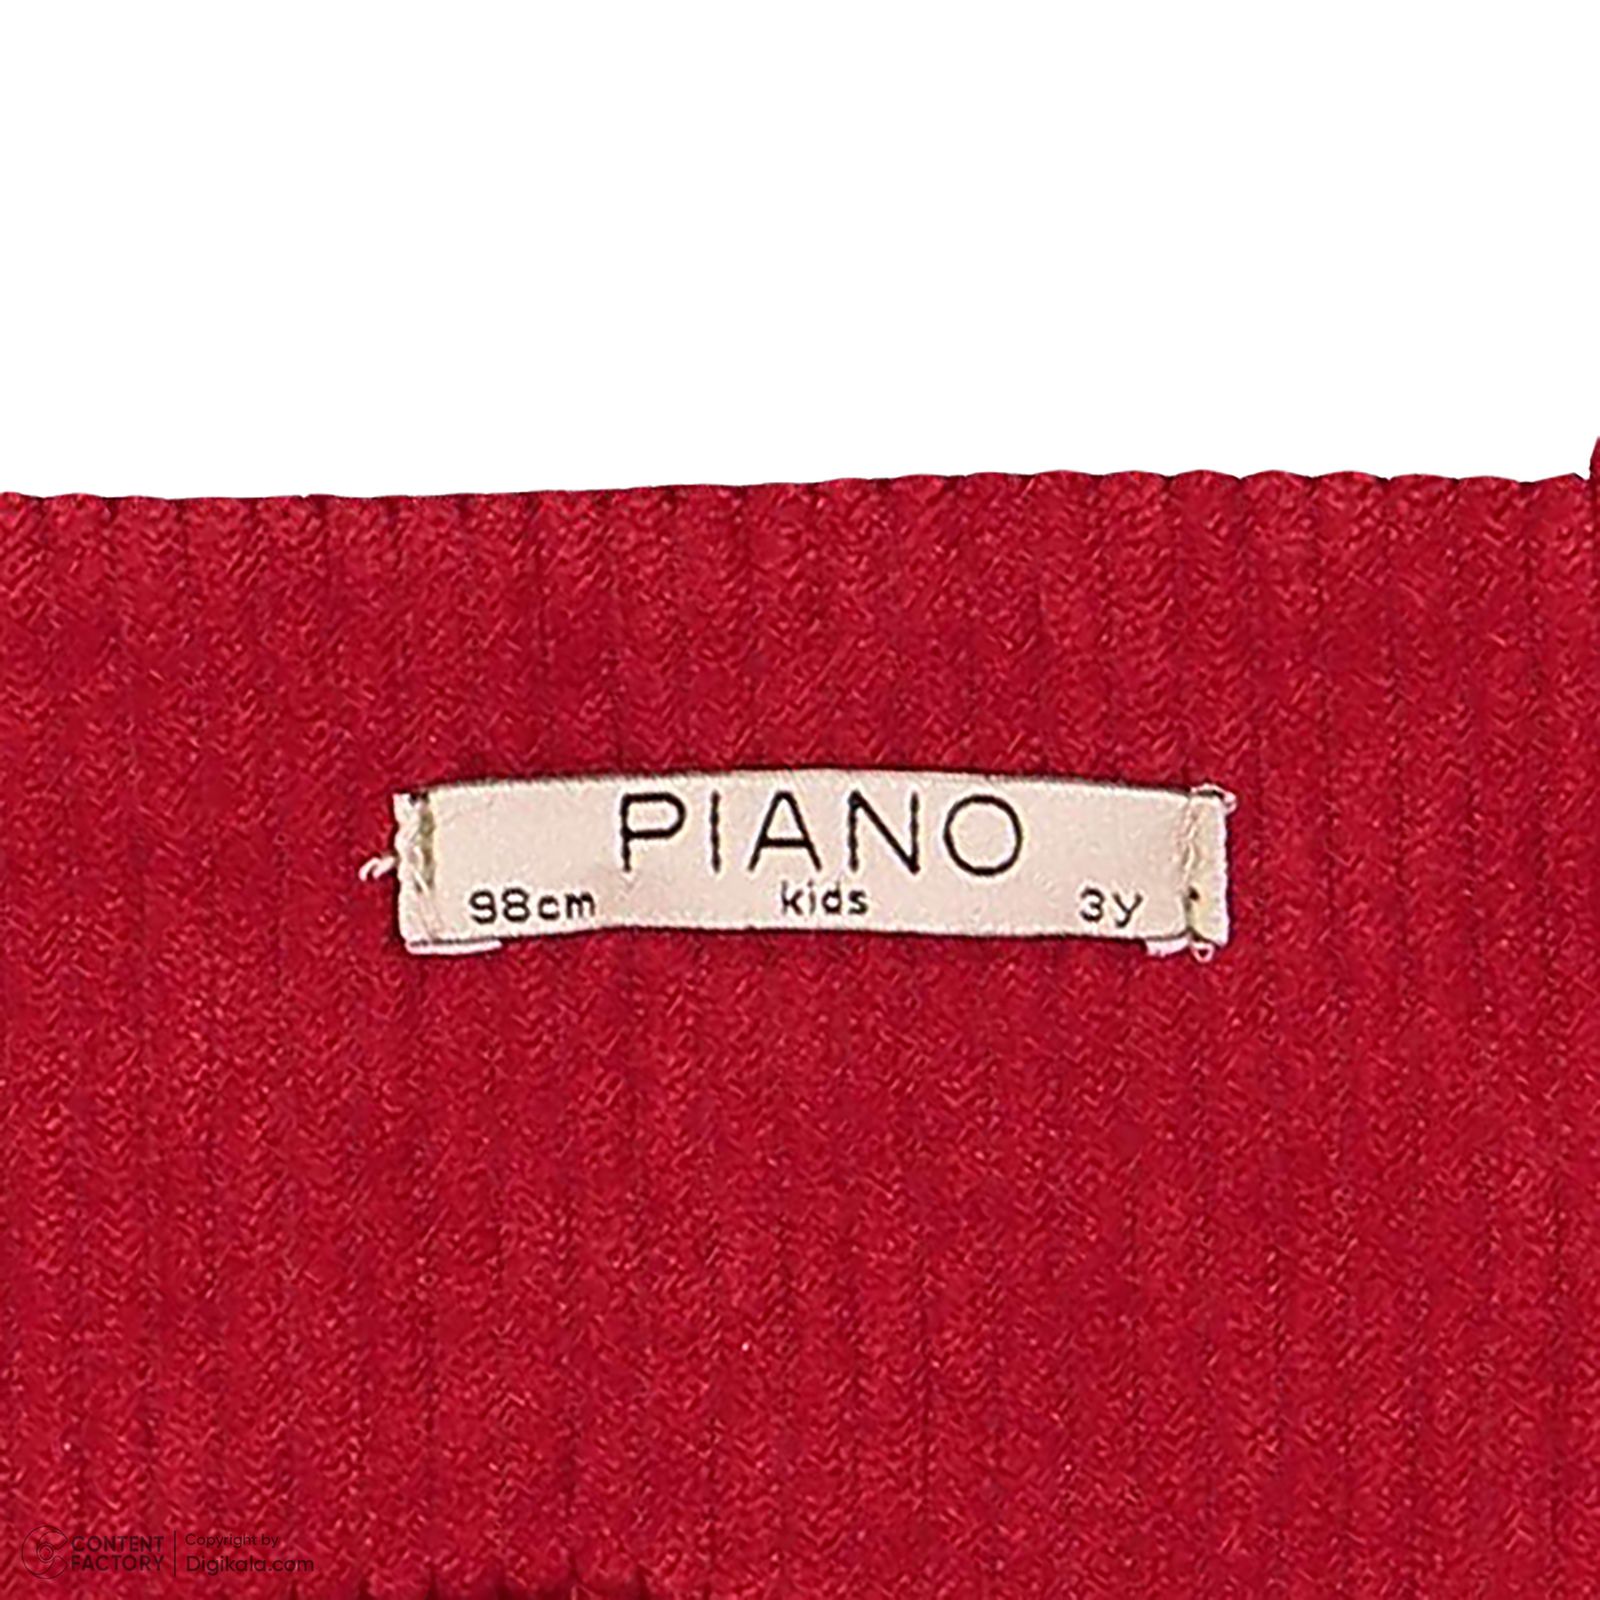 سارافون دخترانه پیانو مدل 10173 رنگ قرمز -  - 5